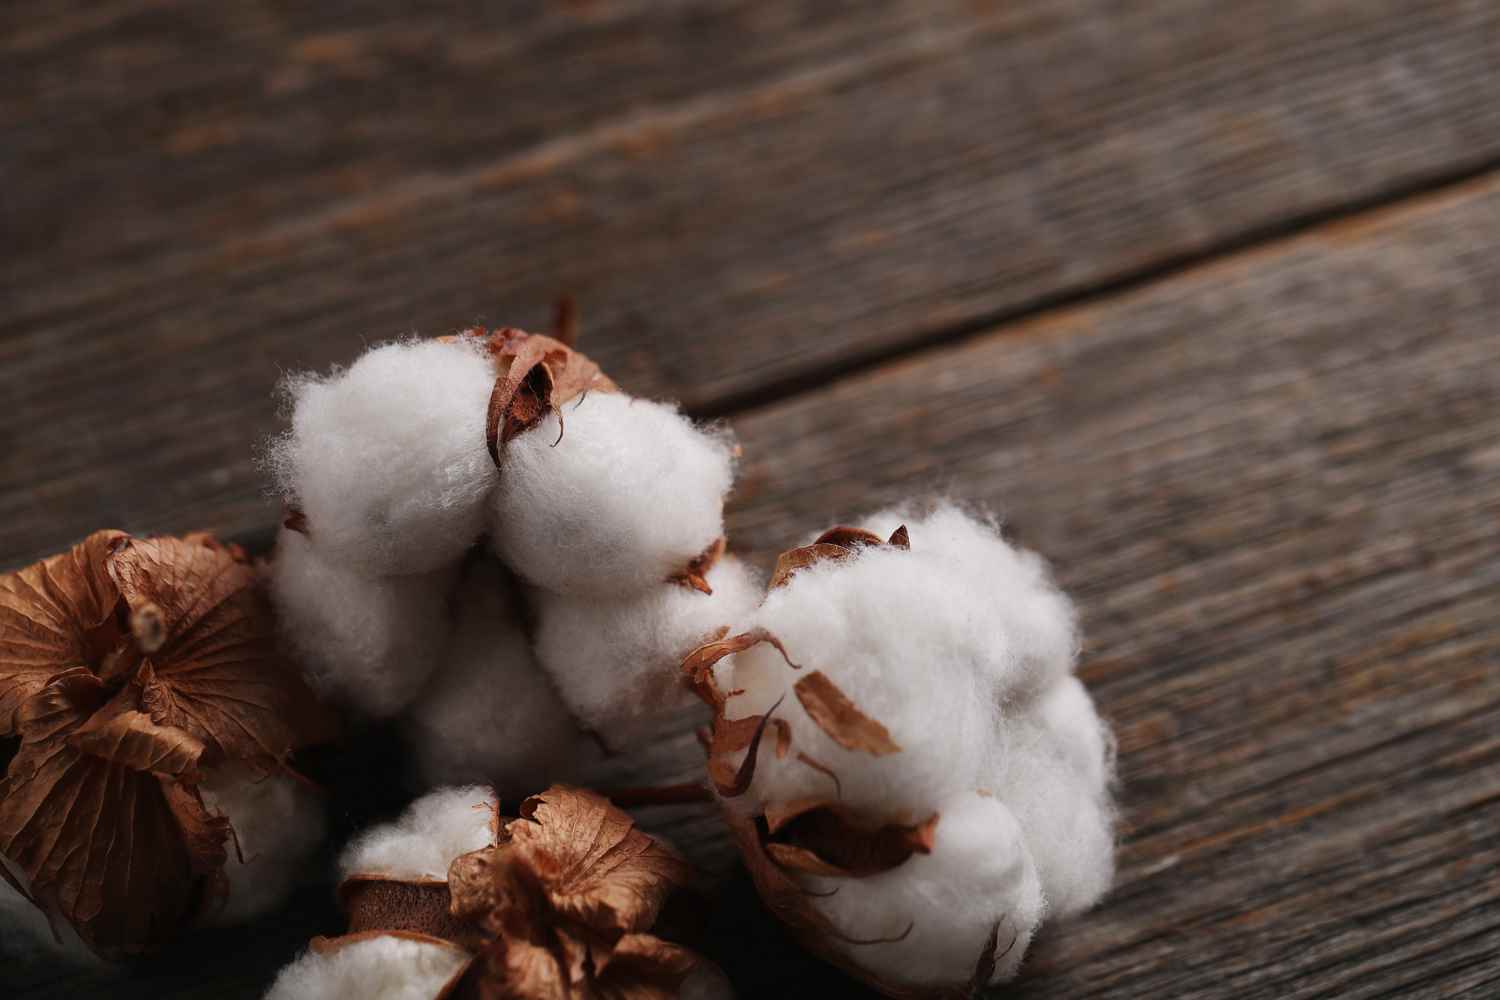 Cuáles son los beneficios de usar ropa interior de algodón? - Sydney